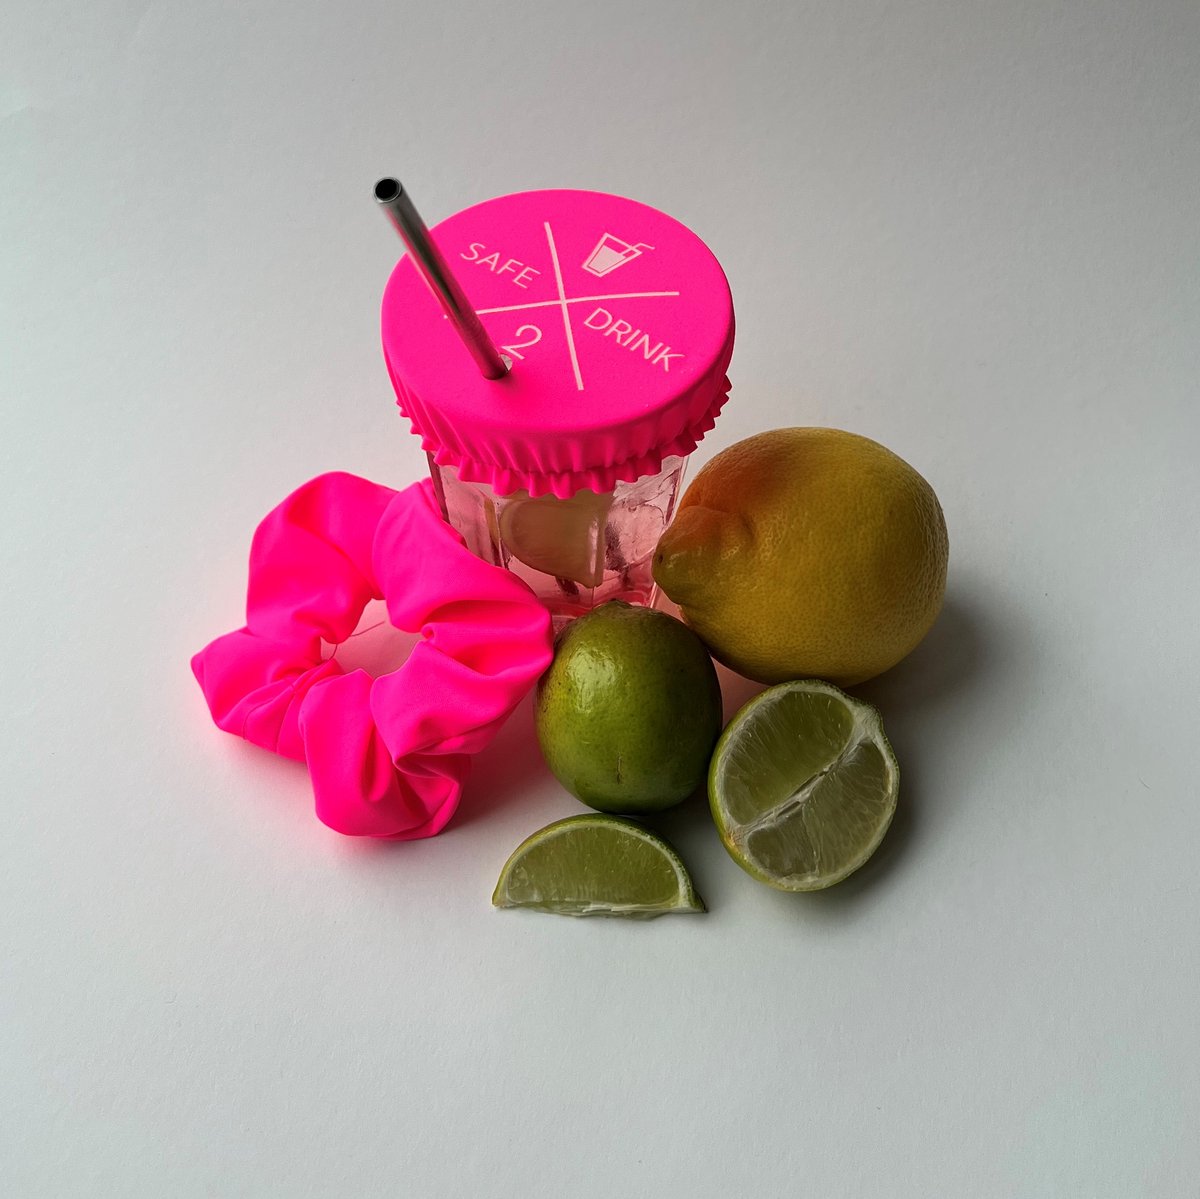 Drinkcover-Drinkbeschermer met scrunchie - roze - voor bescherming tegen drugs en insecten - Festival accessoires - Scrunchie